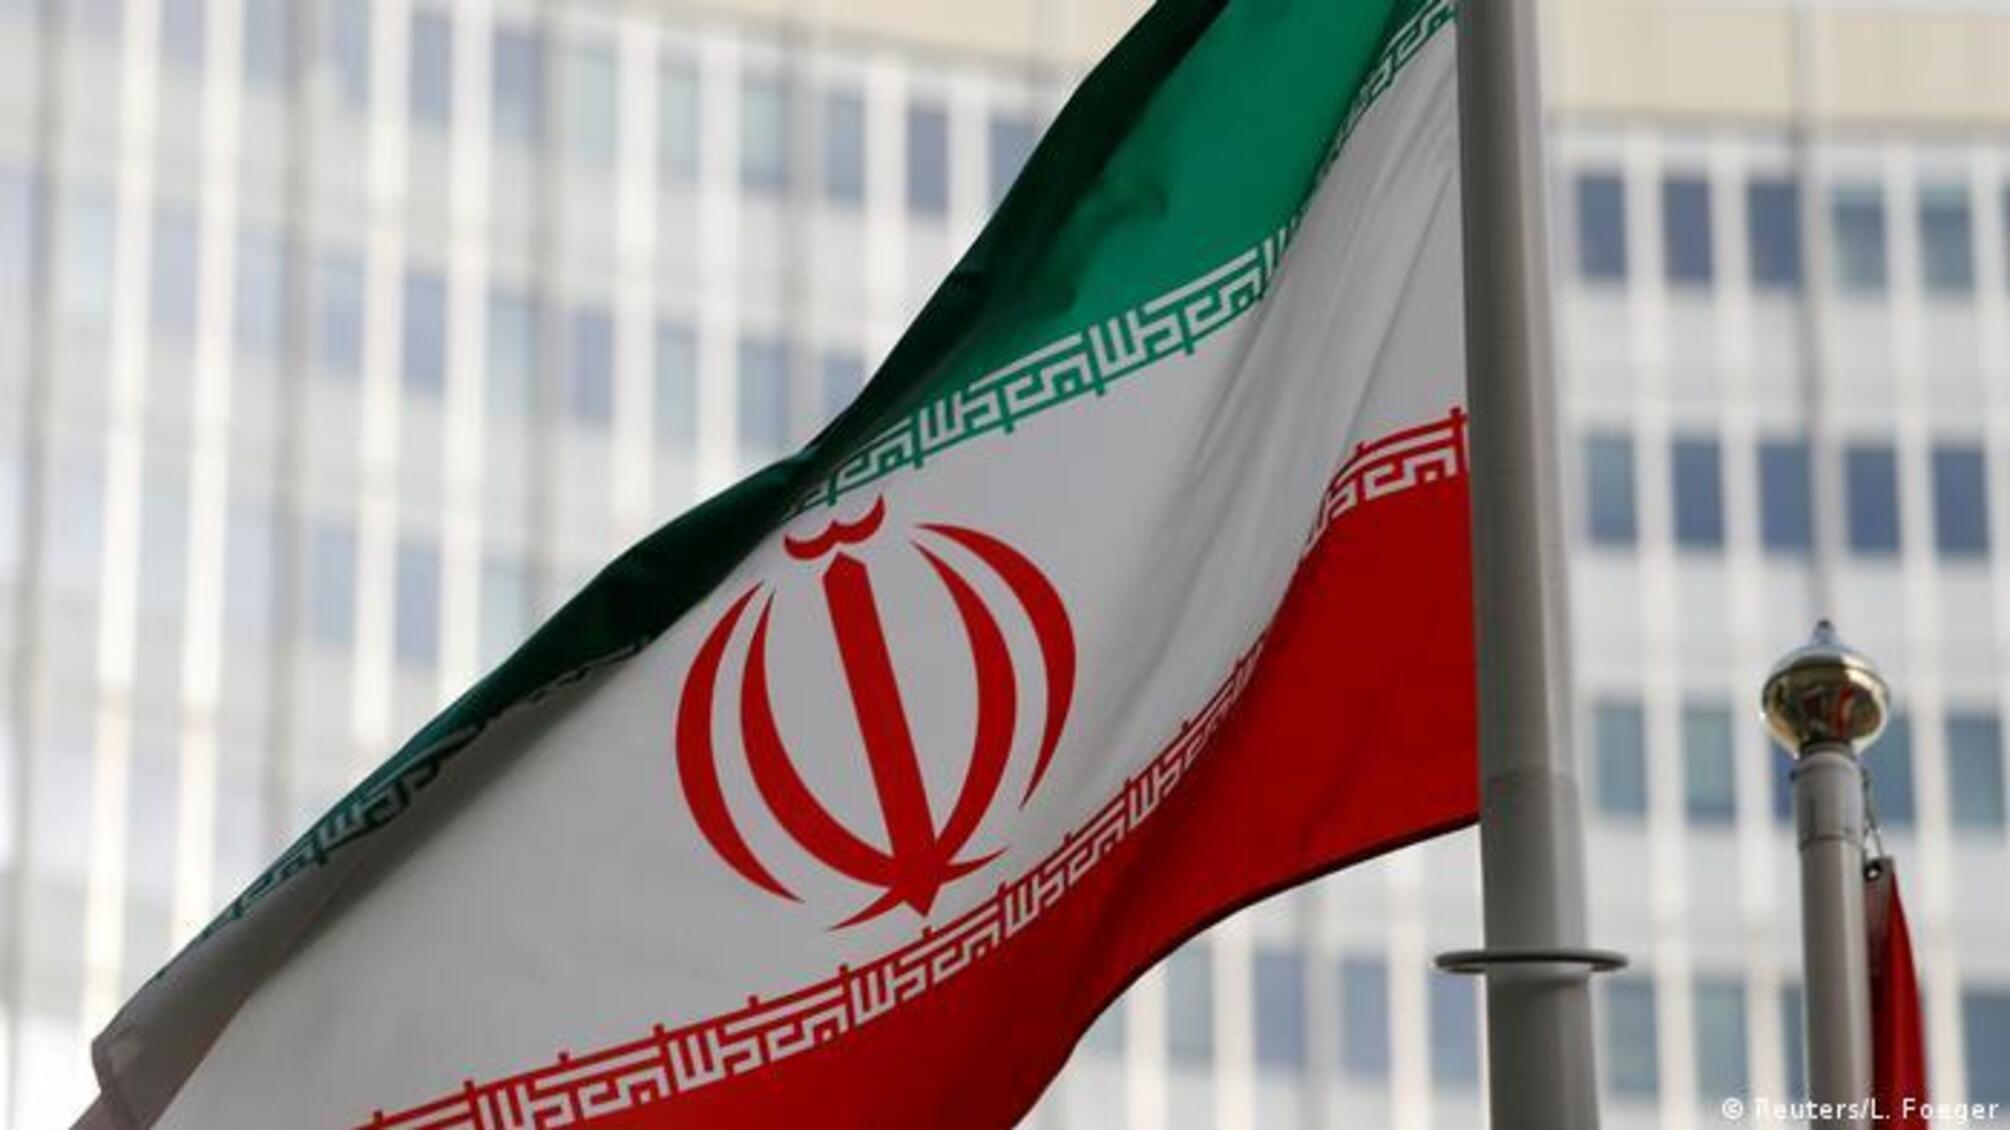 Обострение на Востоке: Иран может напасть на Саудовскую Аравию и Ирак – WSJ